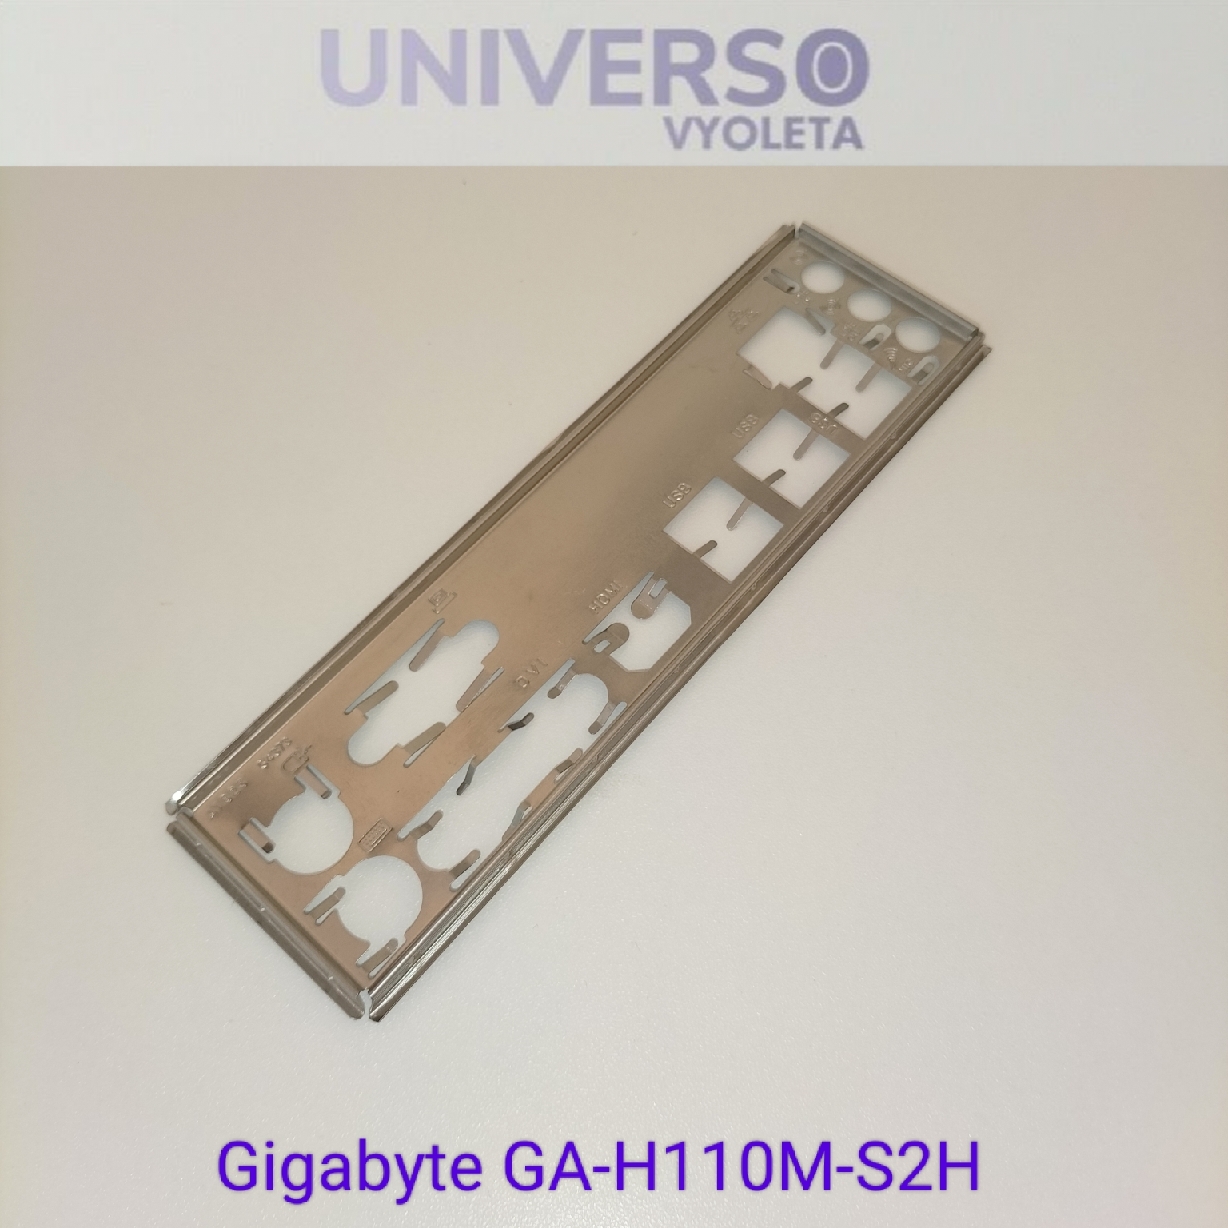 GIGABYTE GA-H110M-S2H